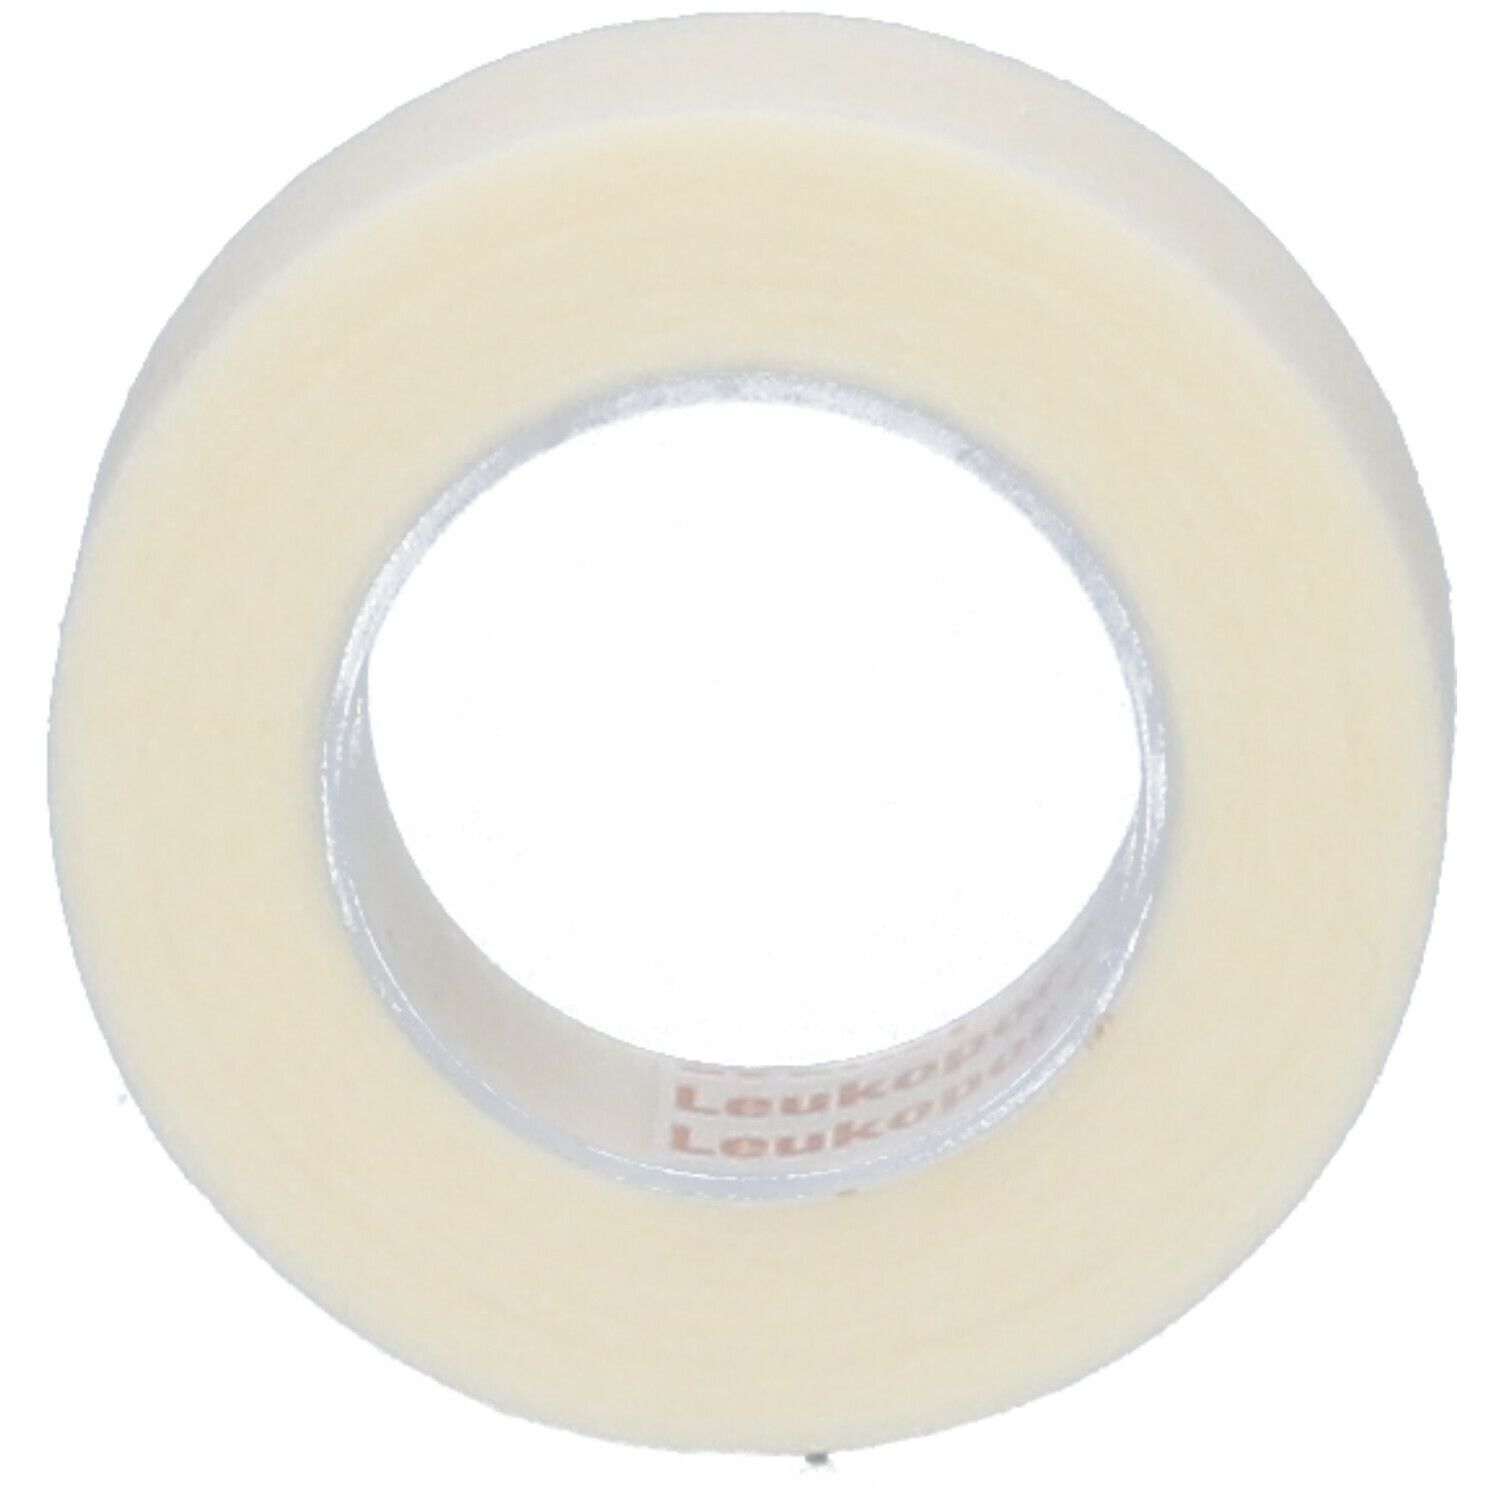 Leukopor A/Allergic Adhesive Plaster 2453 1.25cm x 9.2m